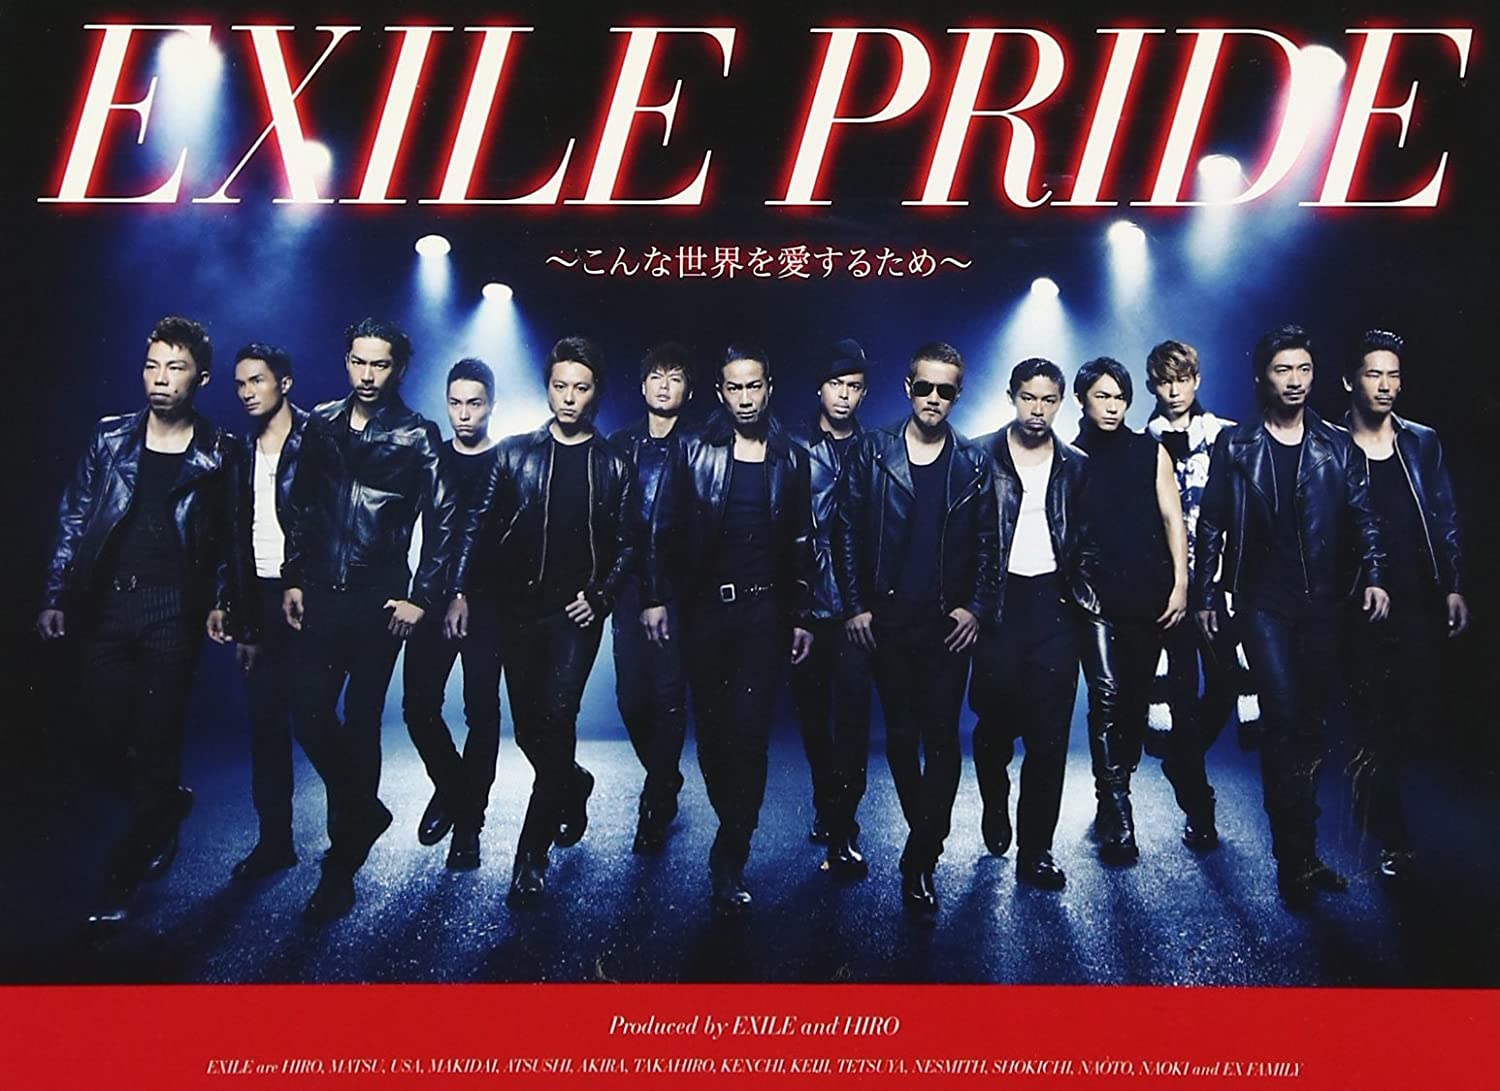 「EXILE PRIDE ～こんな世界を愛するため～」の曲タイトルへの不満まとめ 年末の歌番組で苦情続出!?